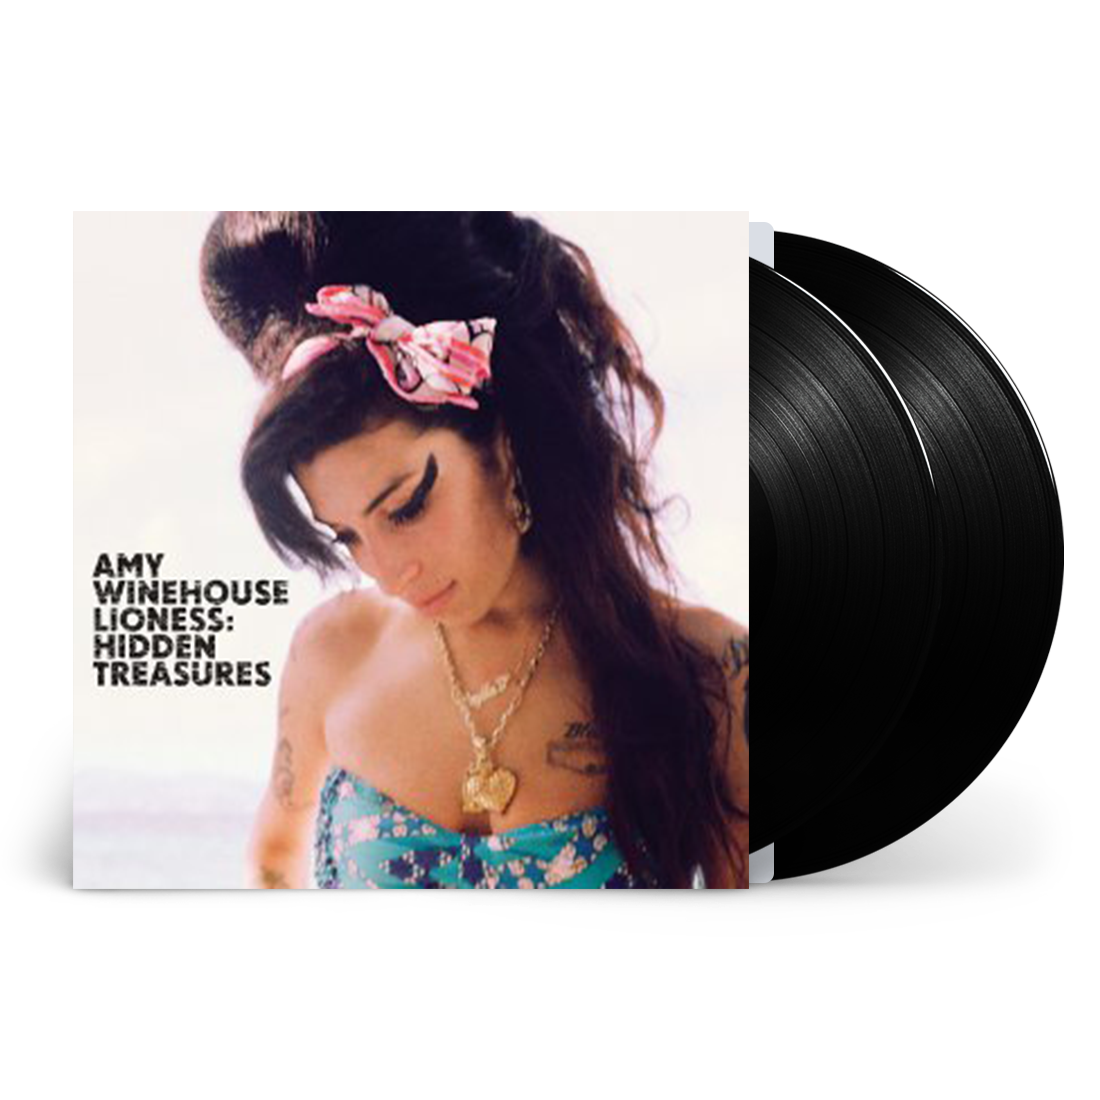 Amy Winehouse - Lioness - Hidden Treasures: Vinyl 2LP